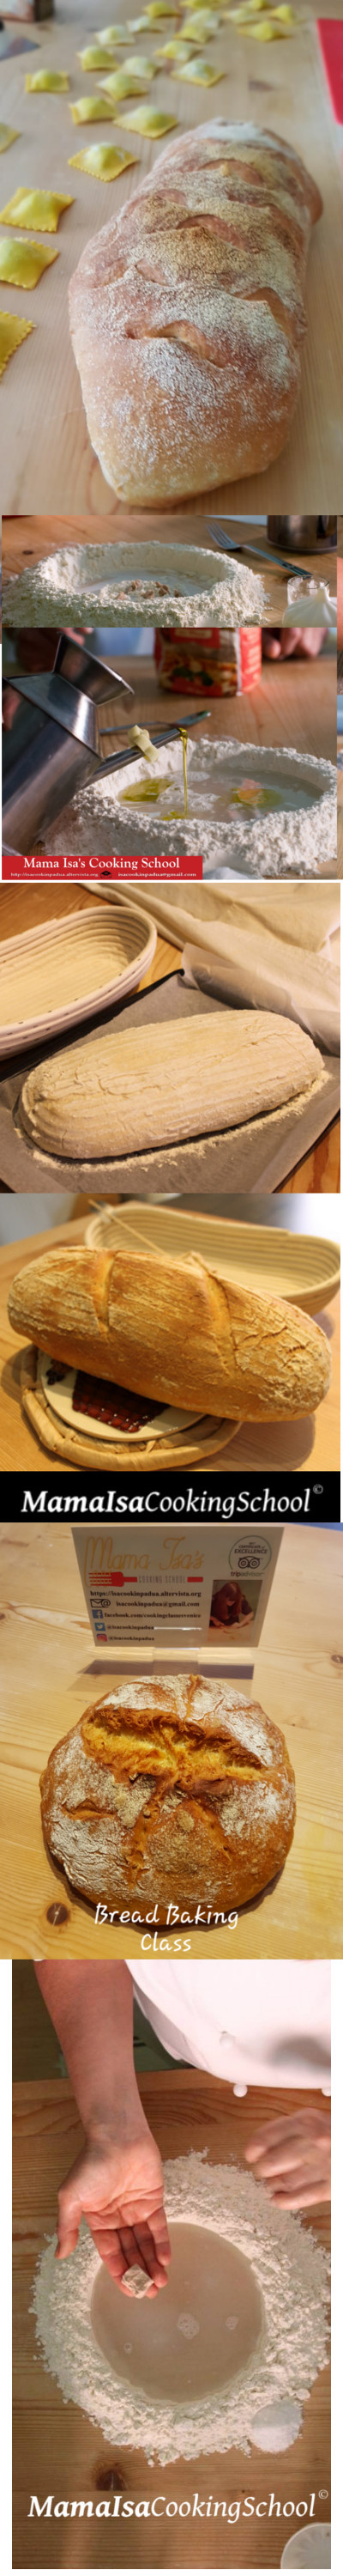 Week Long Sourdough Bread Course in Italy